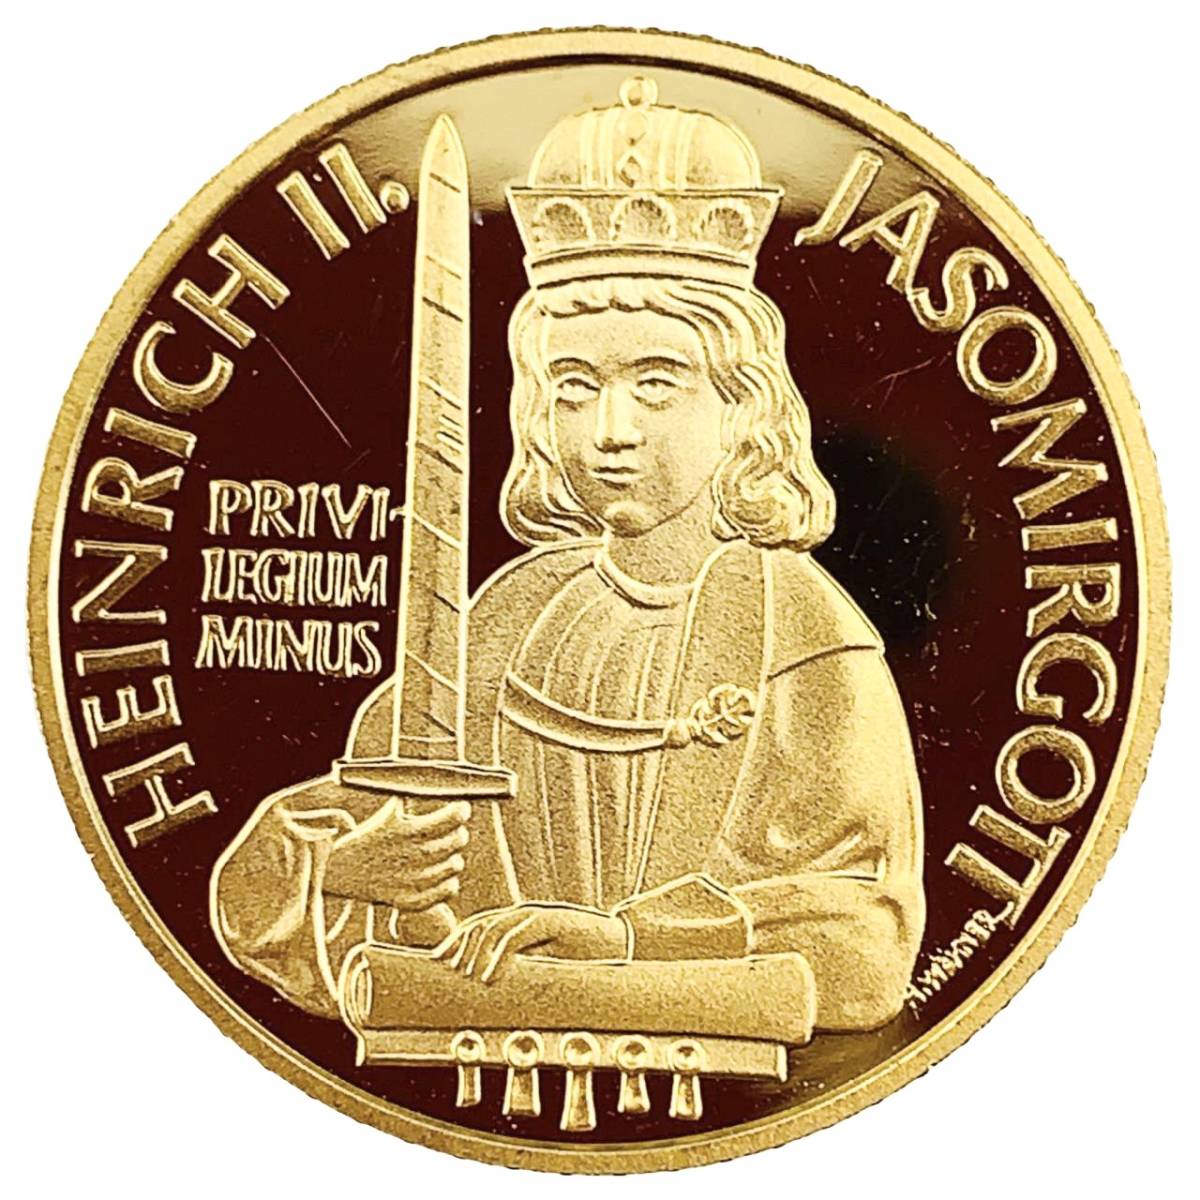  ハインリヒ2世記念金貨 オーストリア 1996年 8.1g 23金 音楽 楽器 コイン イエローゴールド コレクション Gold_画像1